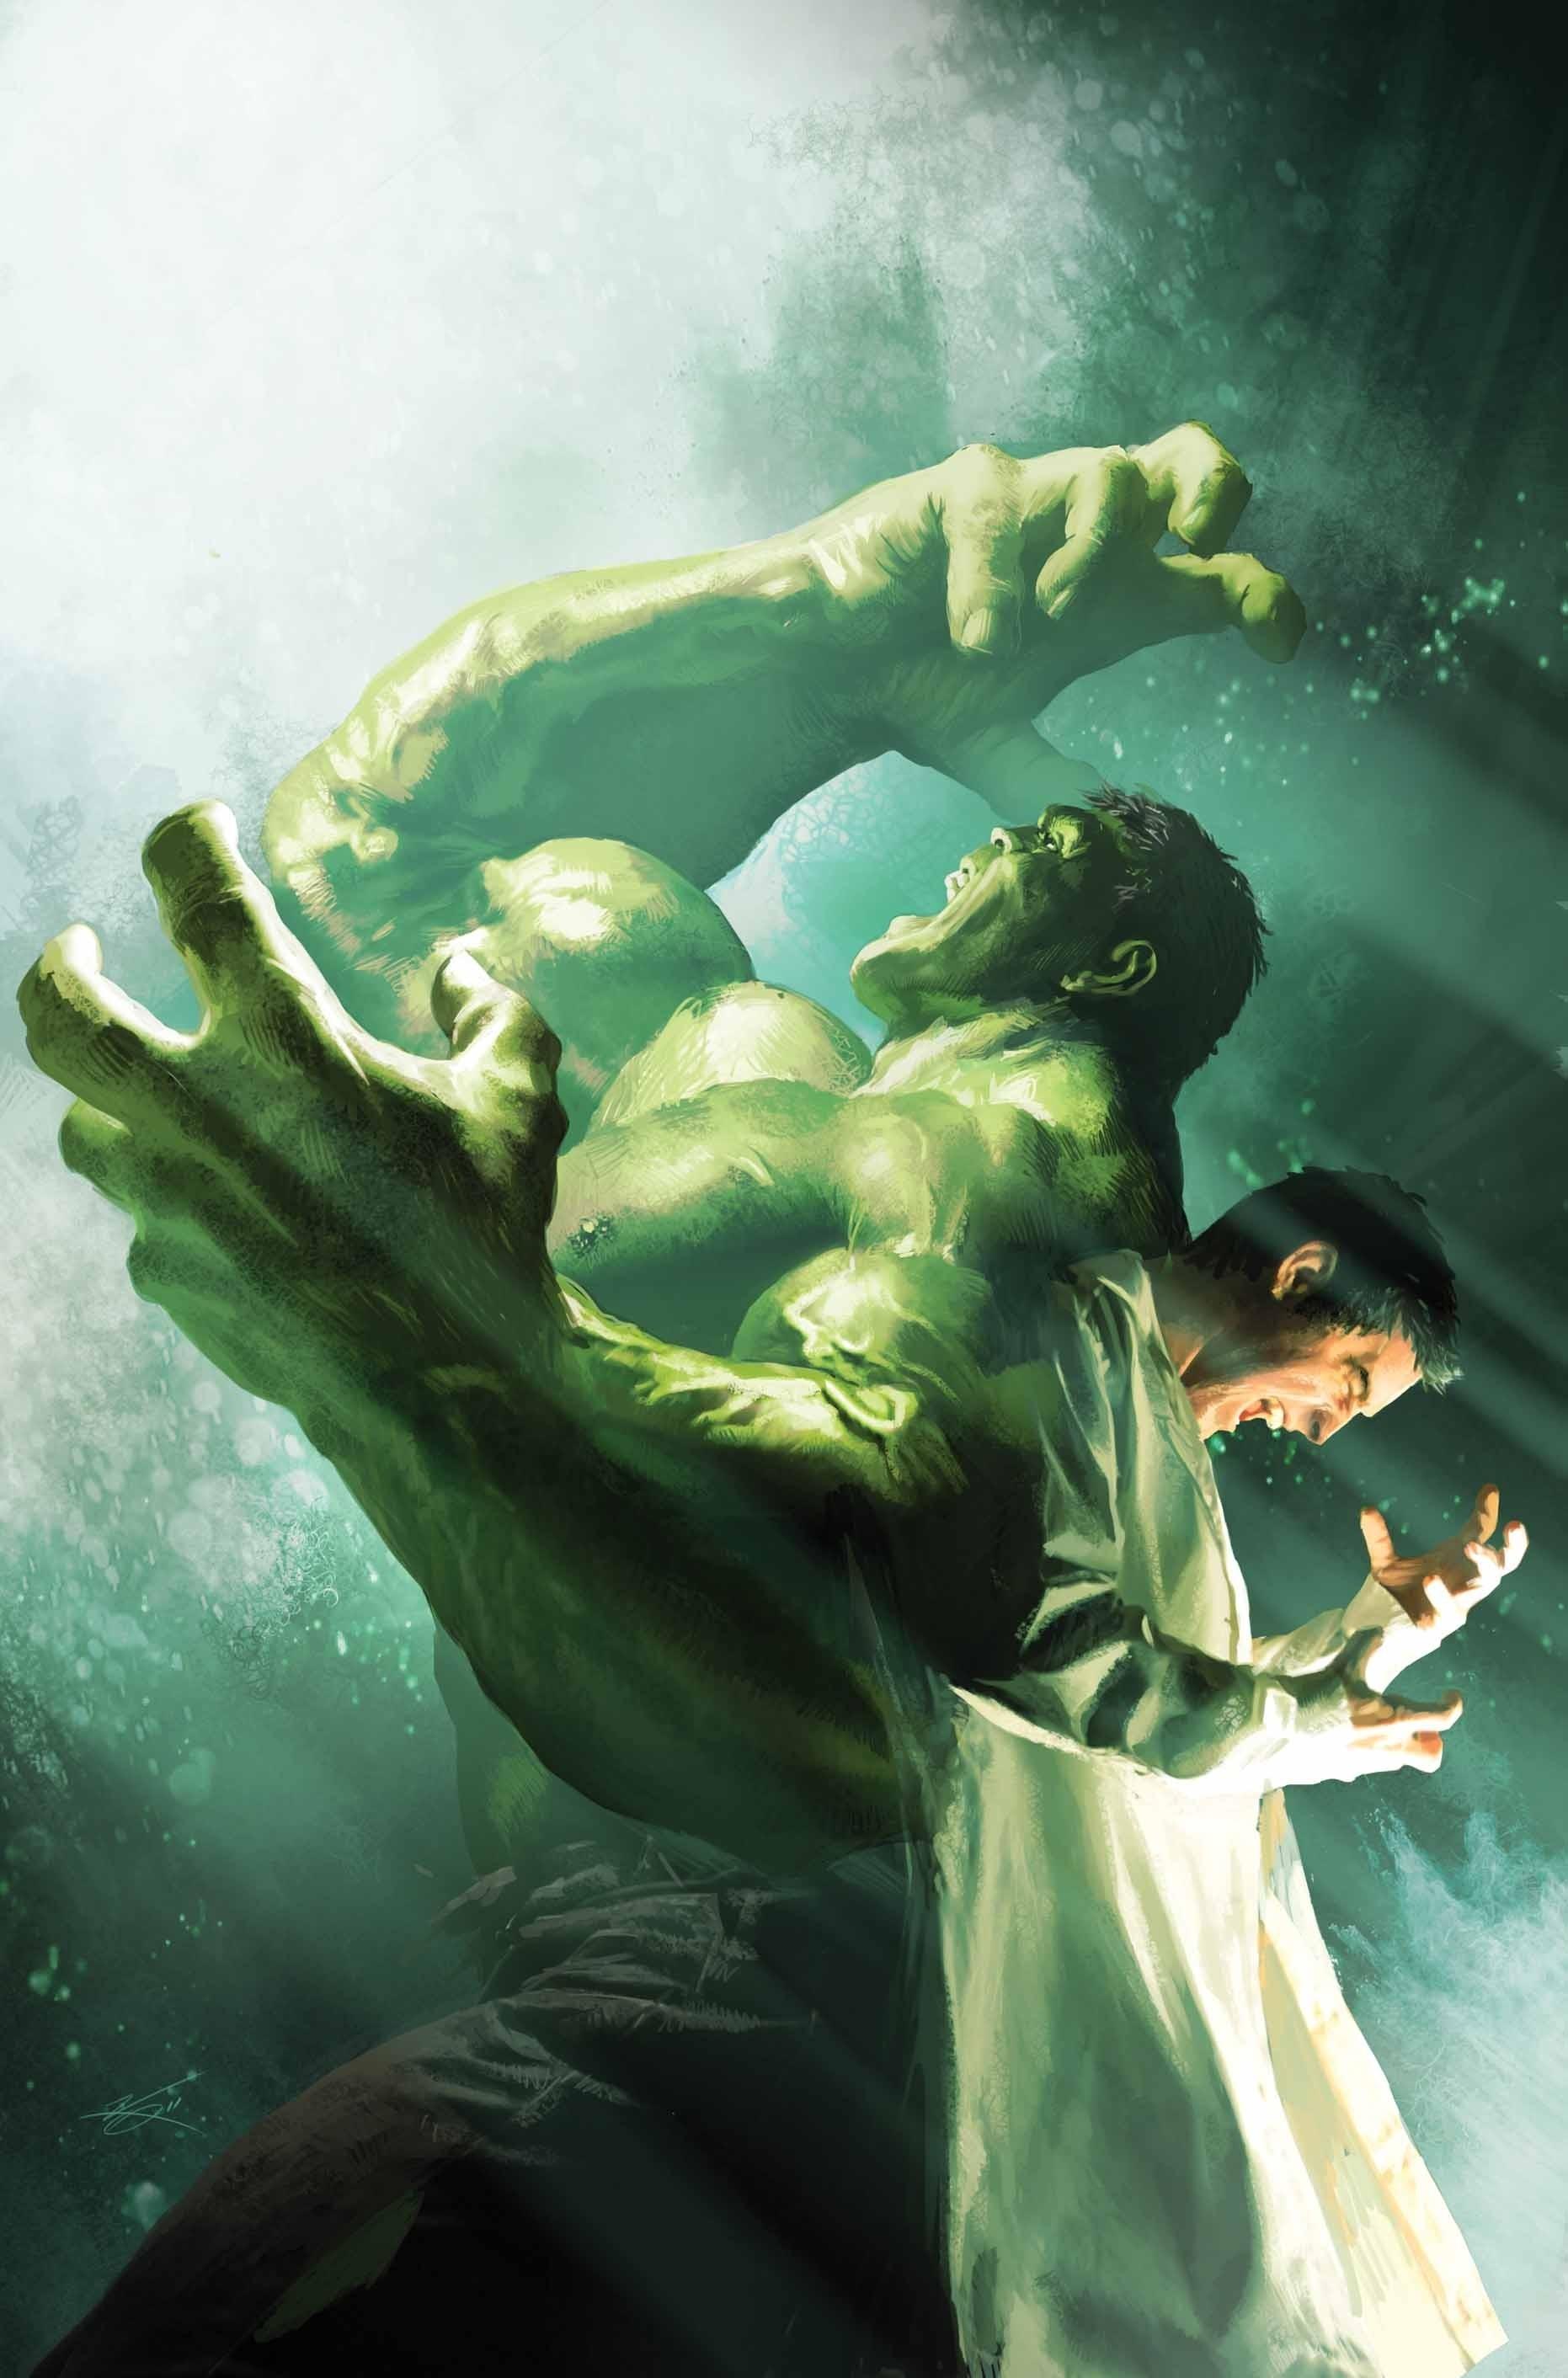 Download 1862x2824 Comics artwork bruce banner the incredible hulk